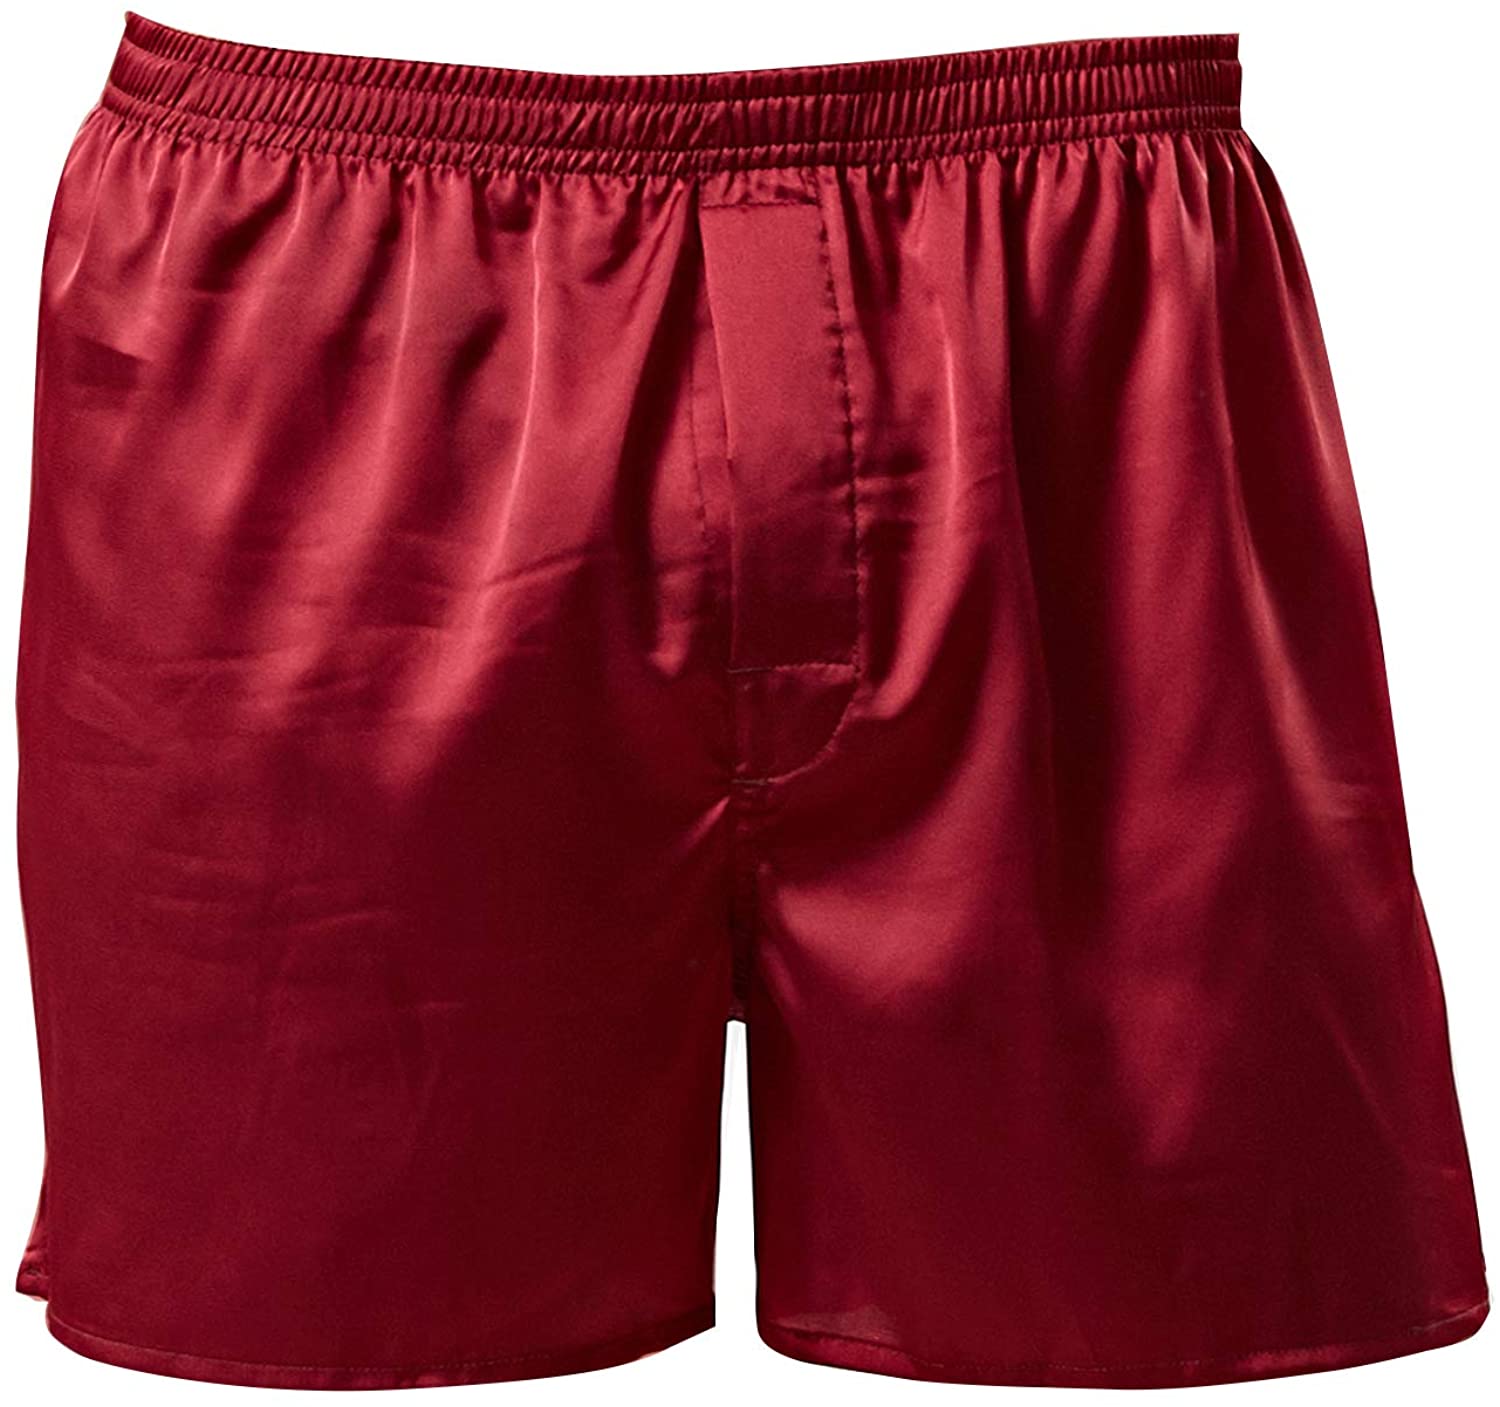 Heflashor Shorts dété Homme en Soie de Pyjama Vêtements de Nuit Satin sous-vêtements Caleçon Boxer Ceinture Elastique 